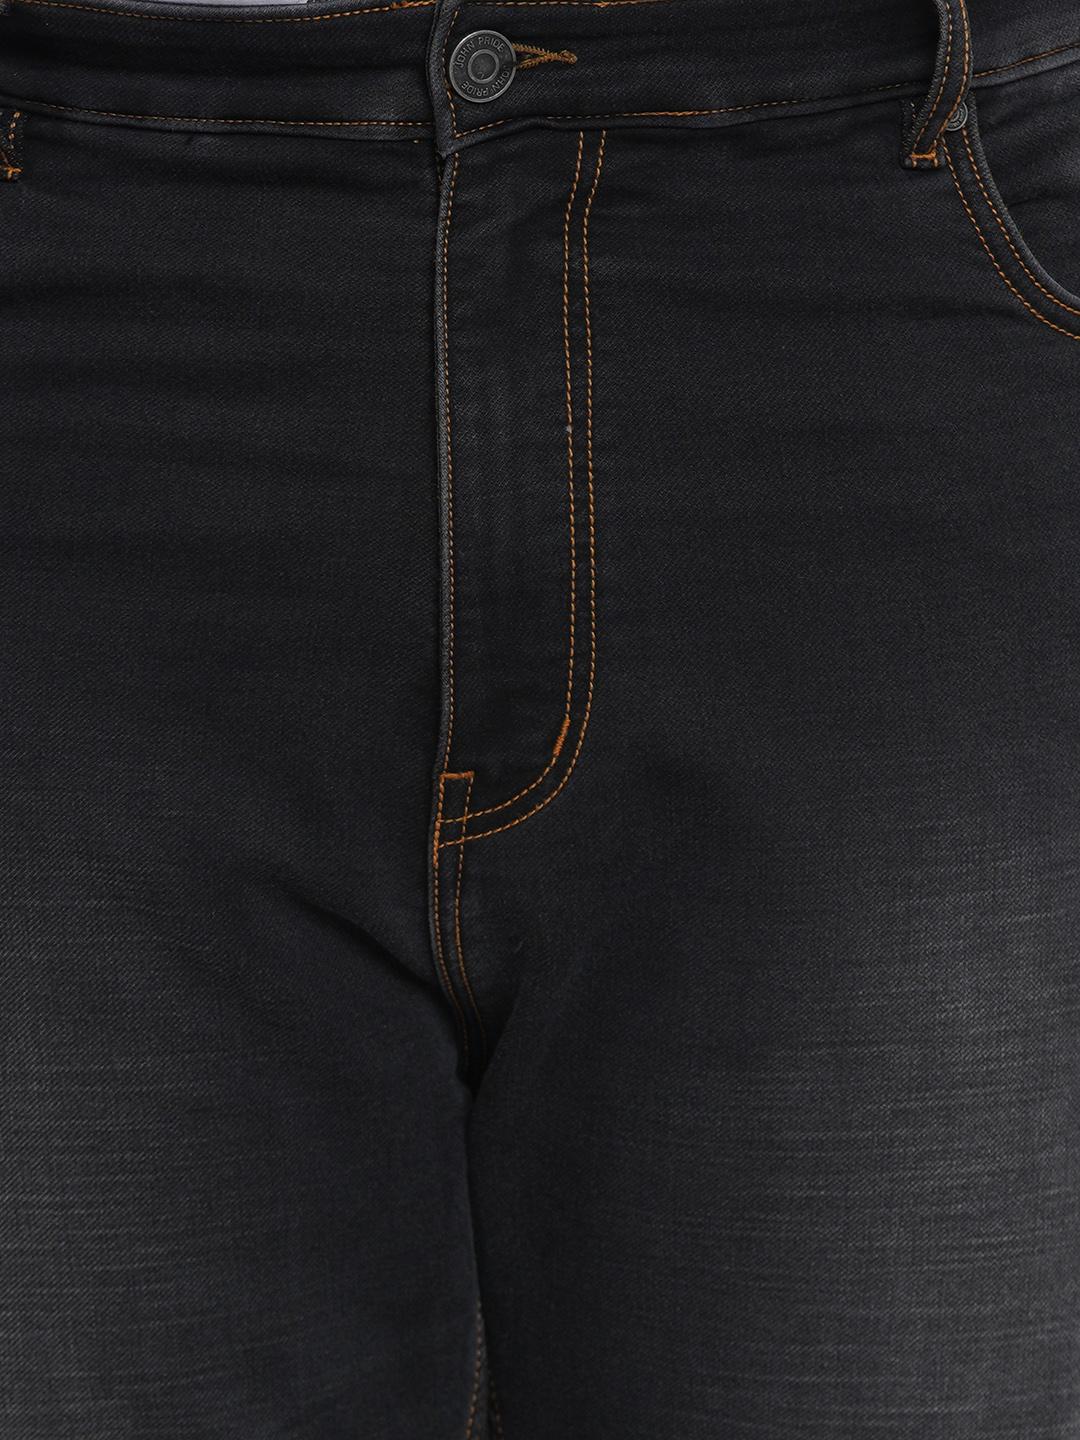 bottomwear/jeans/JPJ12124/jpj12124-2.jpg